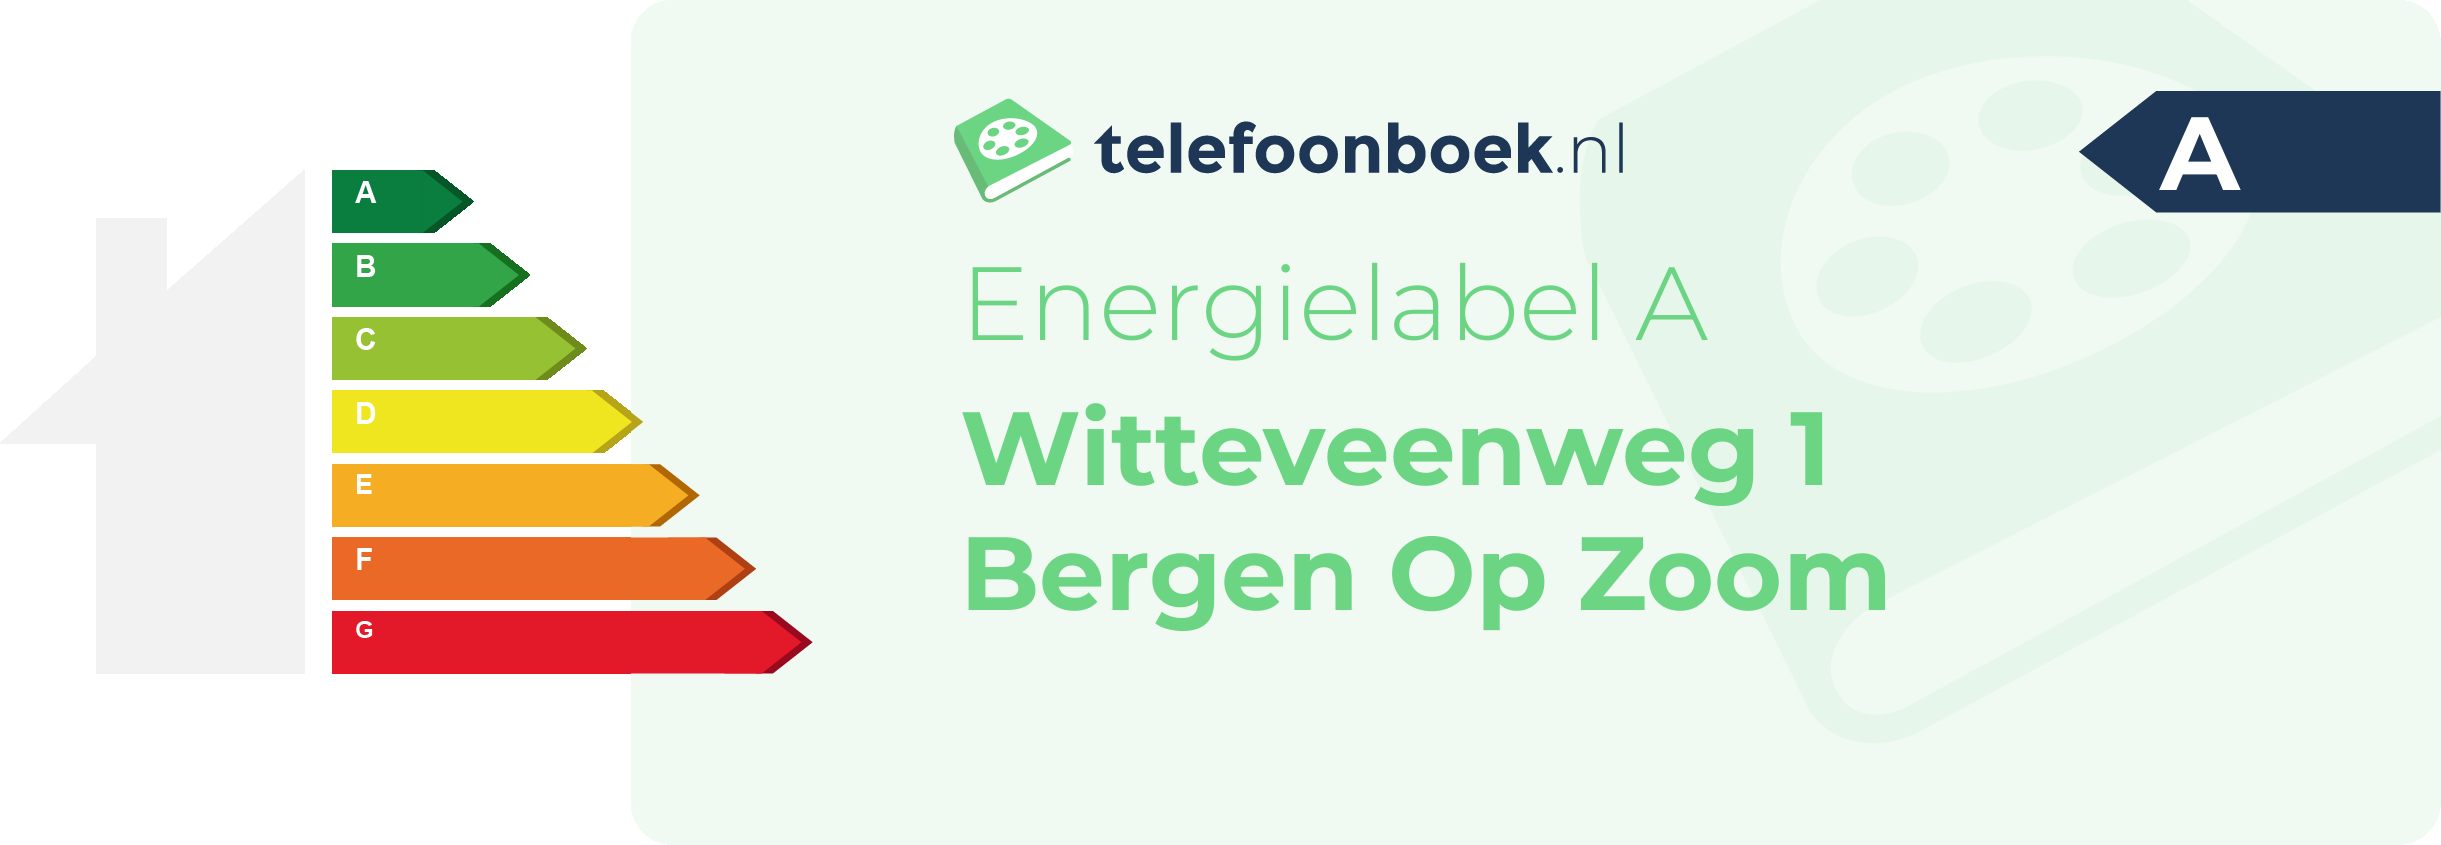 Energielabel Witteveenweg 1 Bergen Op Zoom